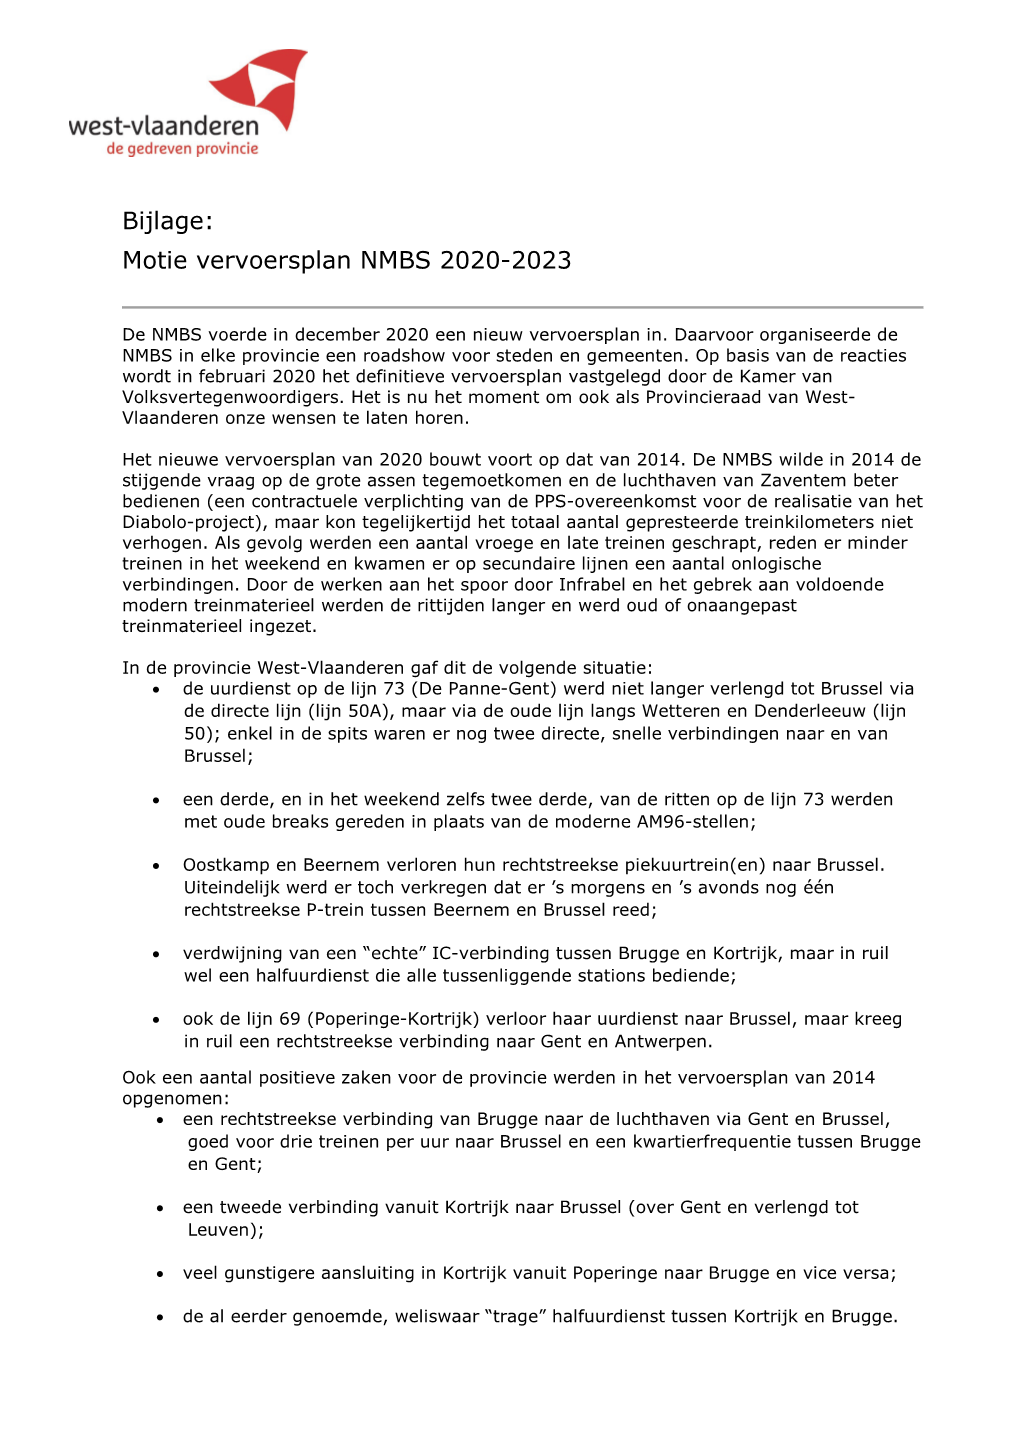 Bijlage: Motie Vervoersplan NMBS 2020-2023